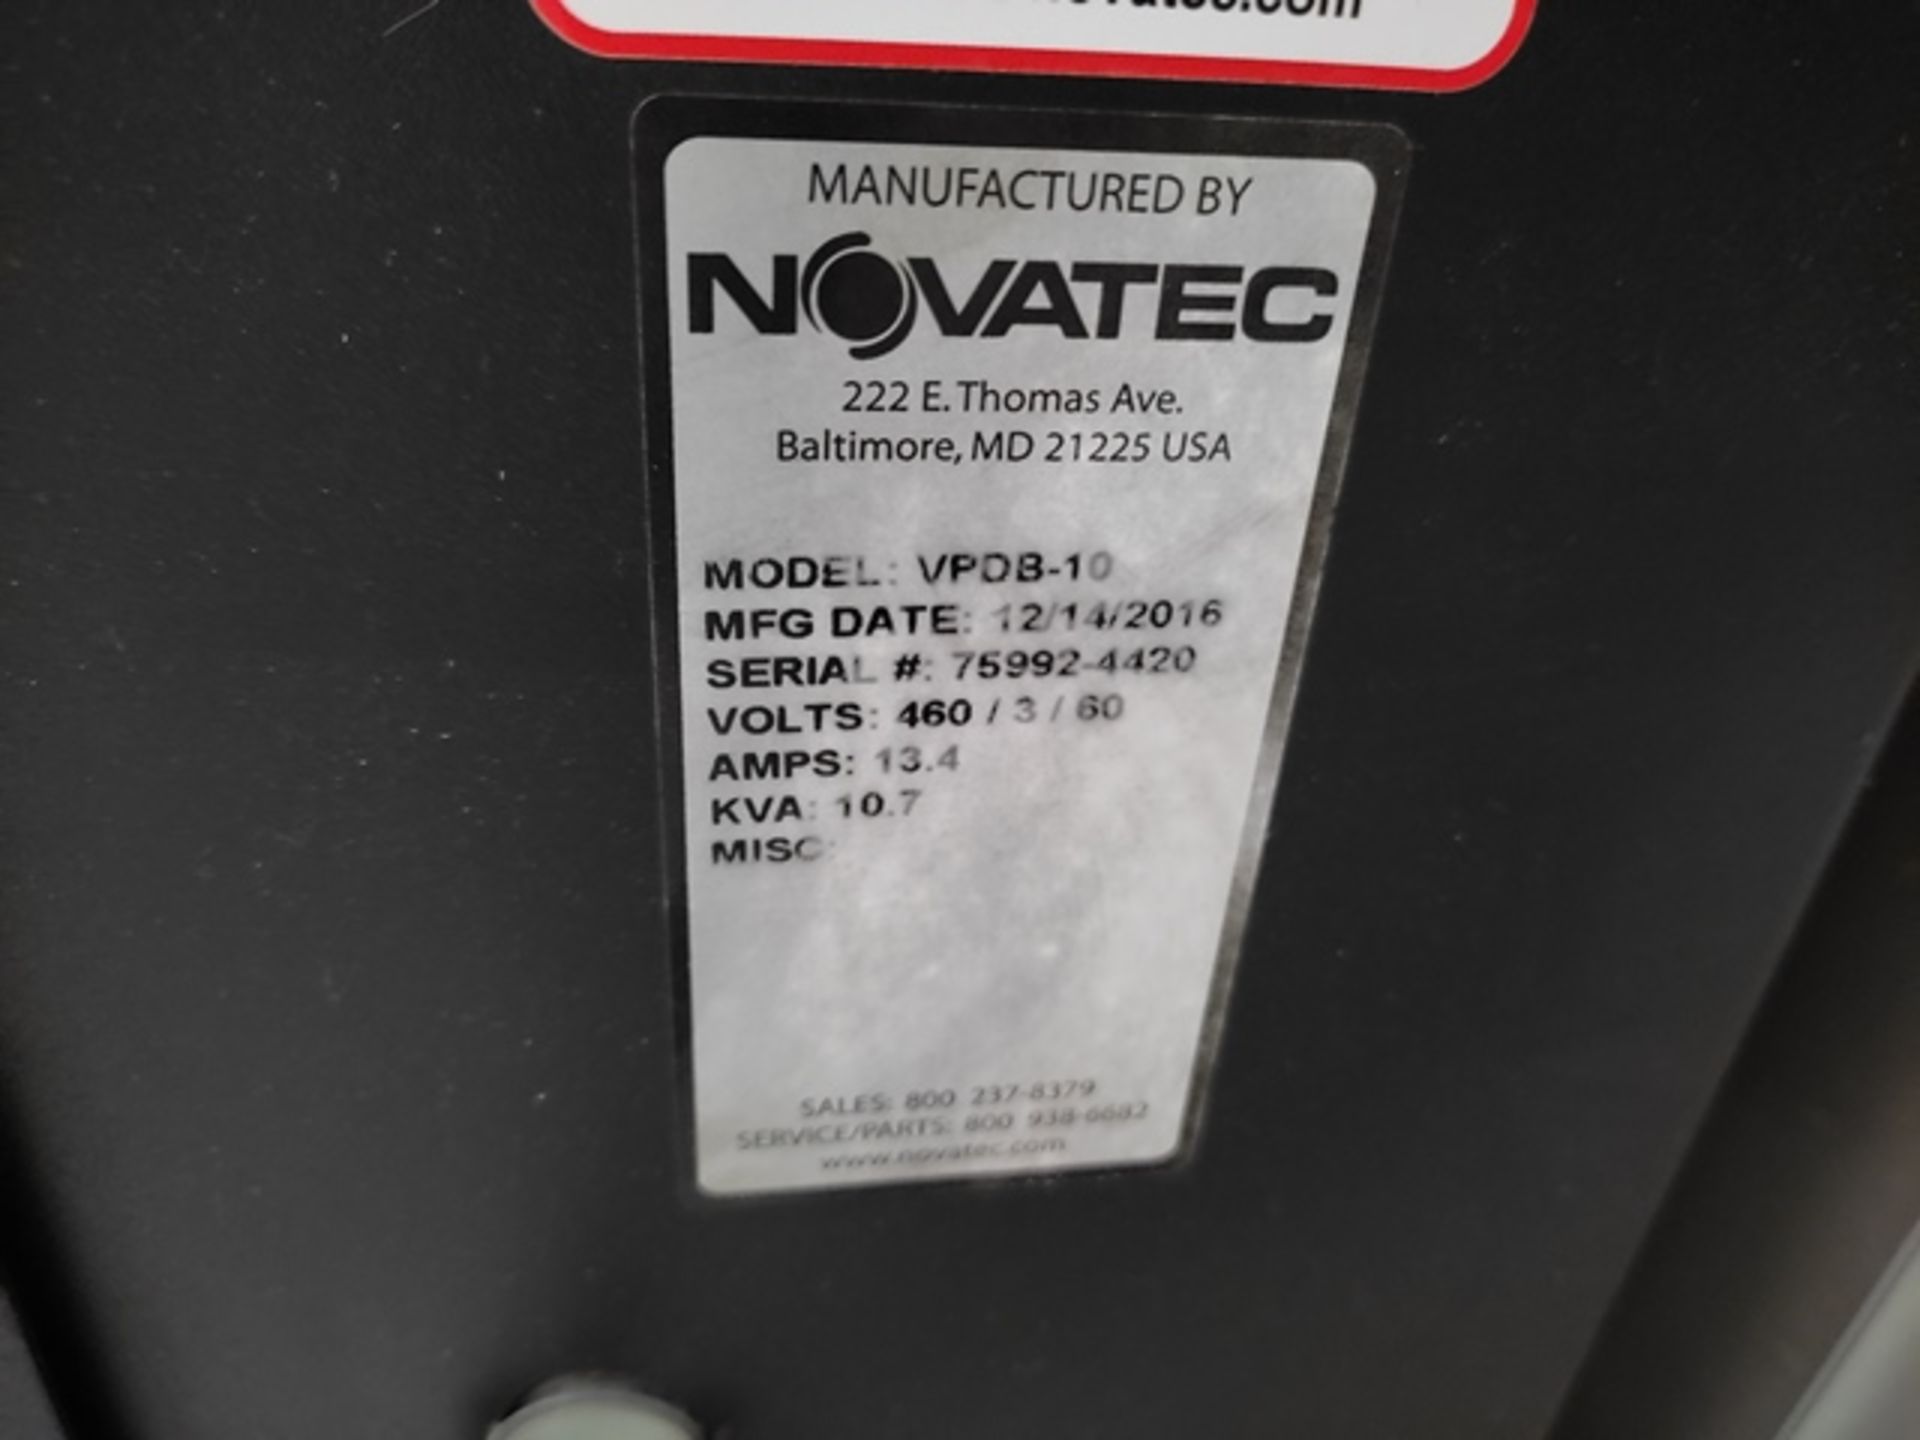 Novatec VPDV-10 170 CFM Vacuum Pump, Serial: 75992-4420; Year: 2016 - Image 14 of 14